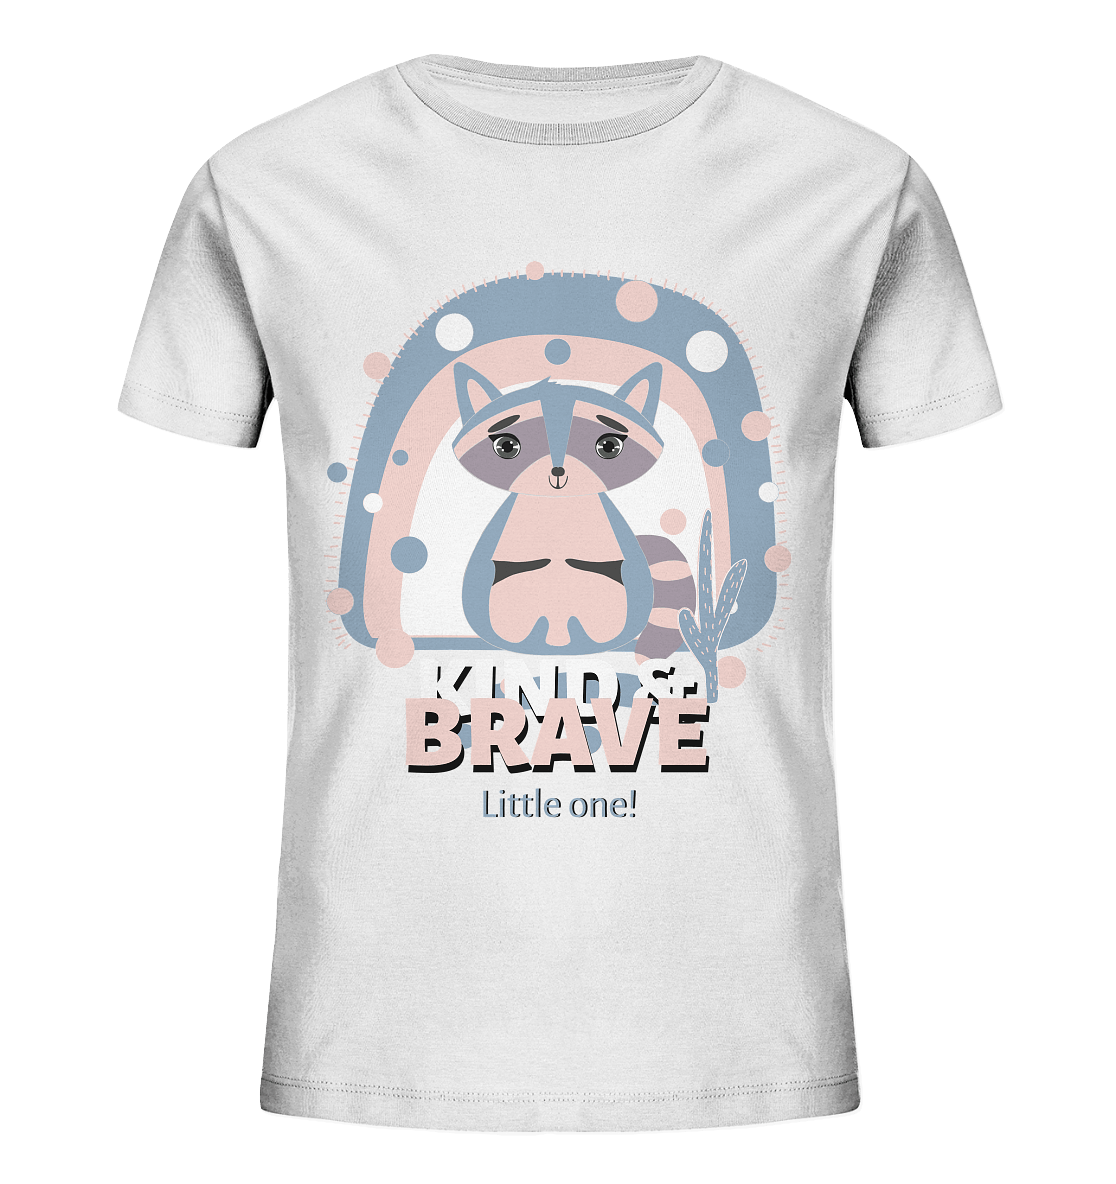 Waschbär Baby Kinder T-Shirt in weiß Racoon Print Kind & Brave Little one von BLOOMINIC